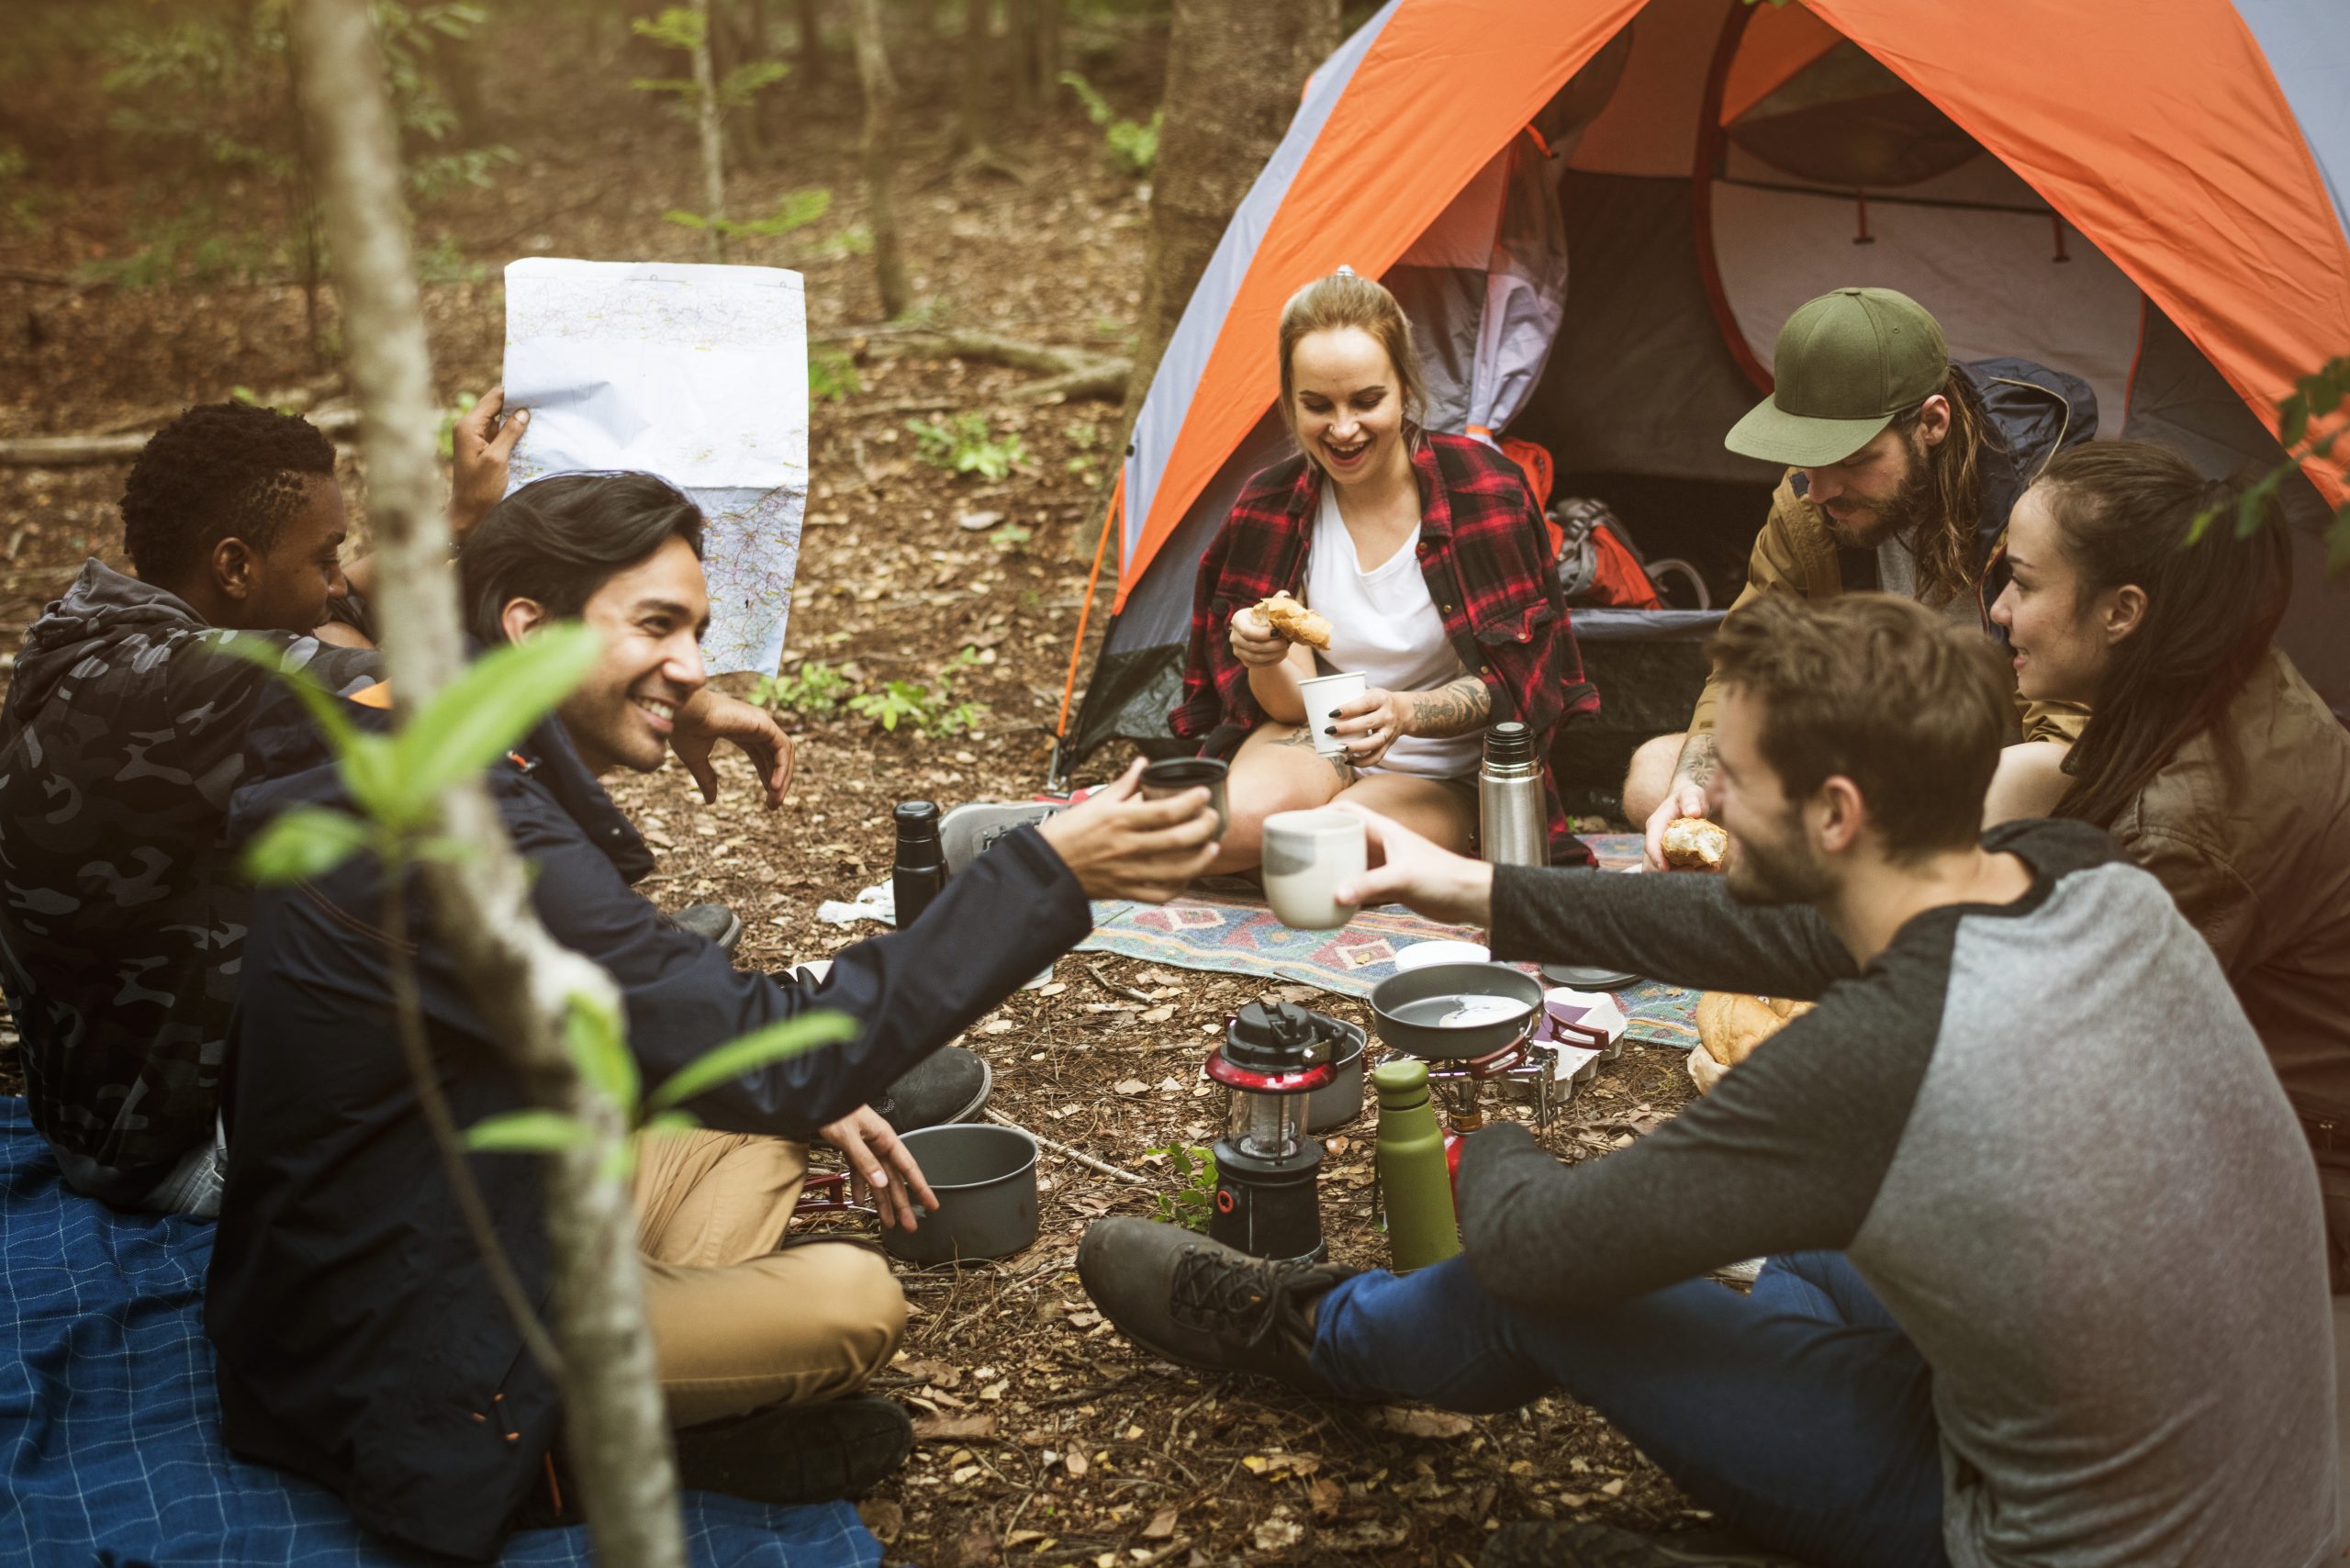 Camping together. Друзья в походе. Люди на пикнике в лесу. Пикник в лесу с друзьями. Туризм палатка люди.